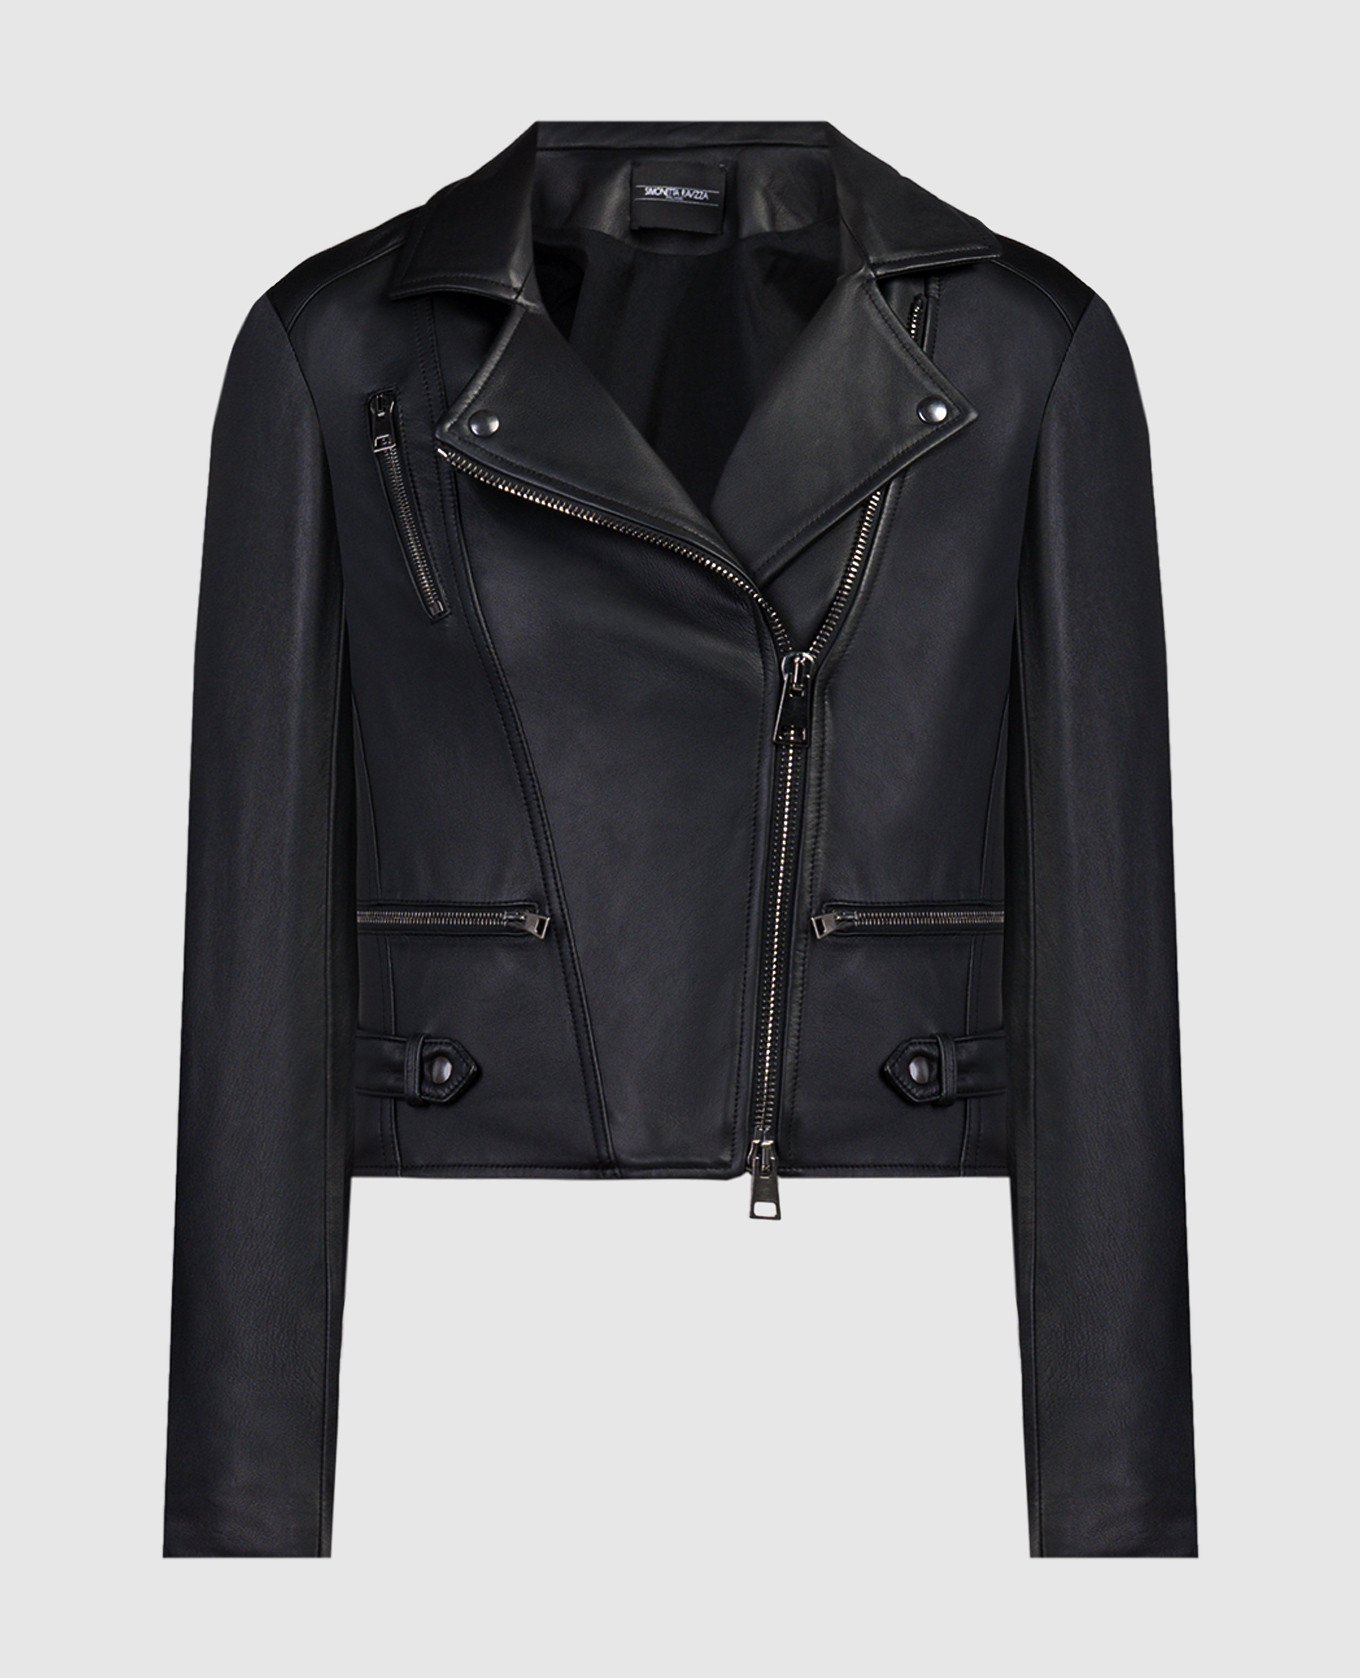 Babi black leather jacket